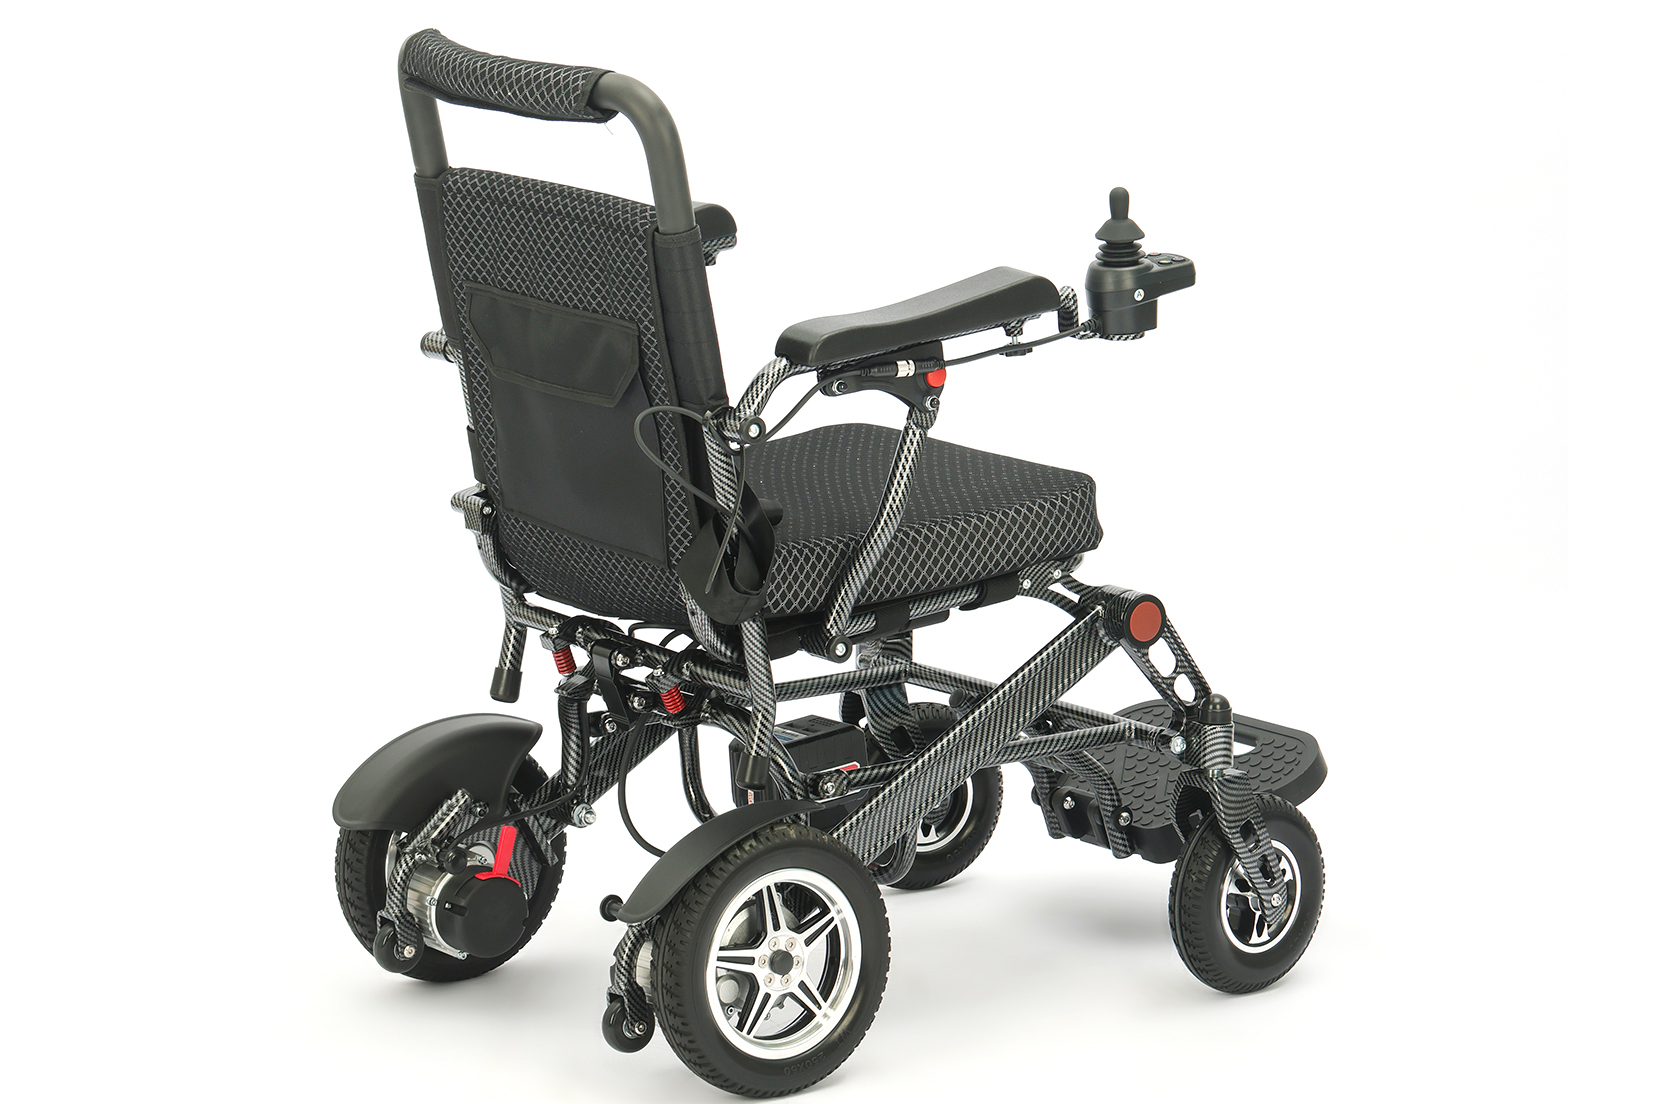 ¿Cuánto sabes sobre las sillas de ruedas eléctricas? -La historia del desarrollo de la silla de ruedas eléctrica